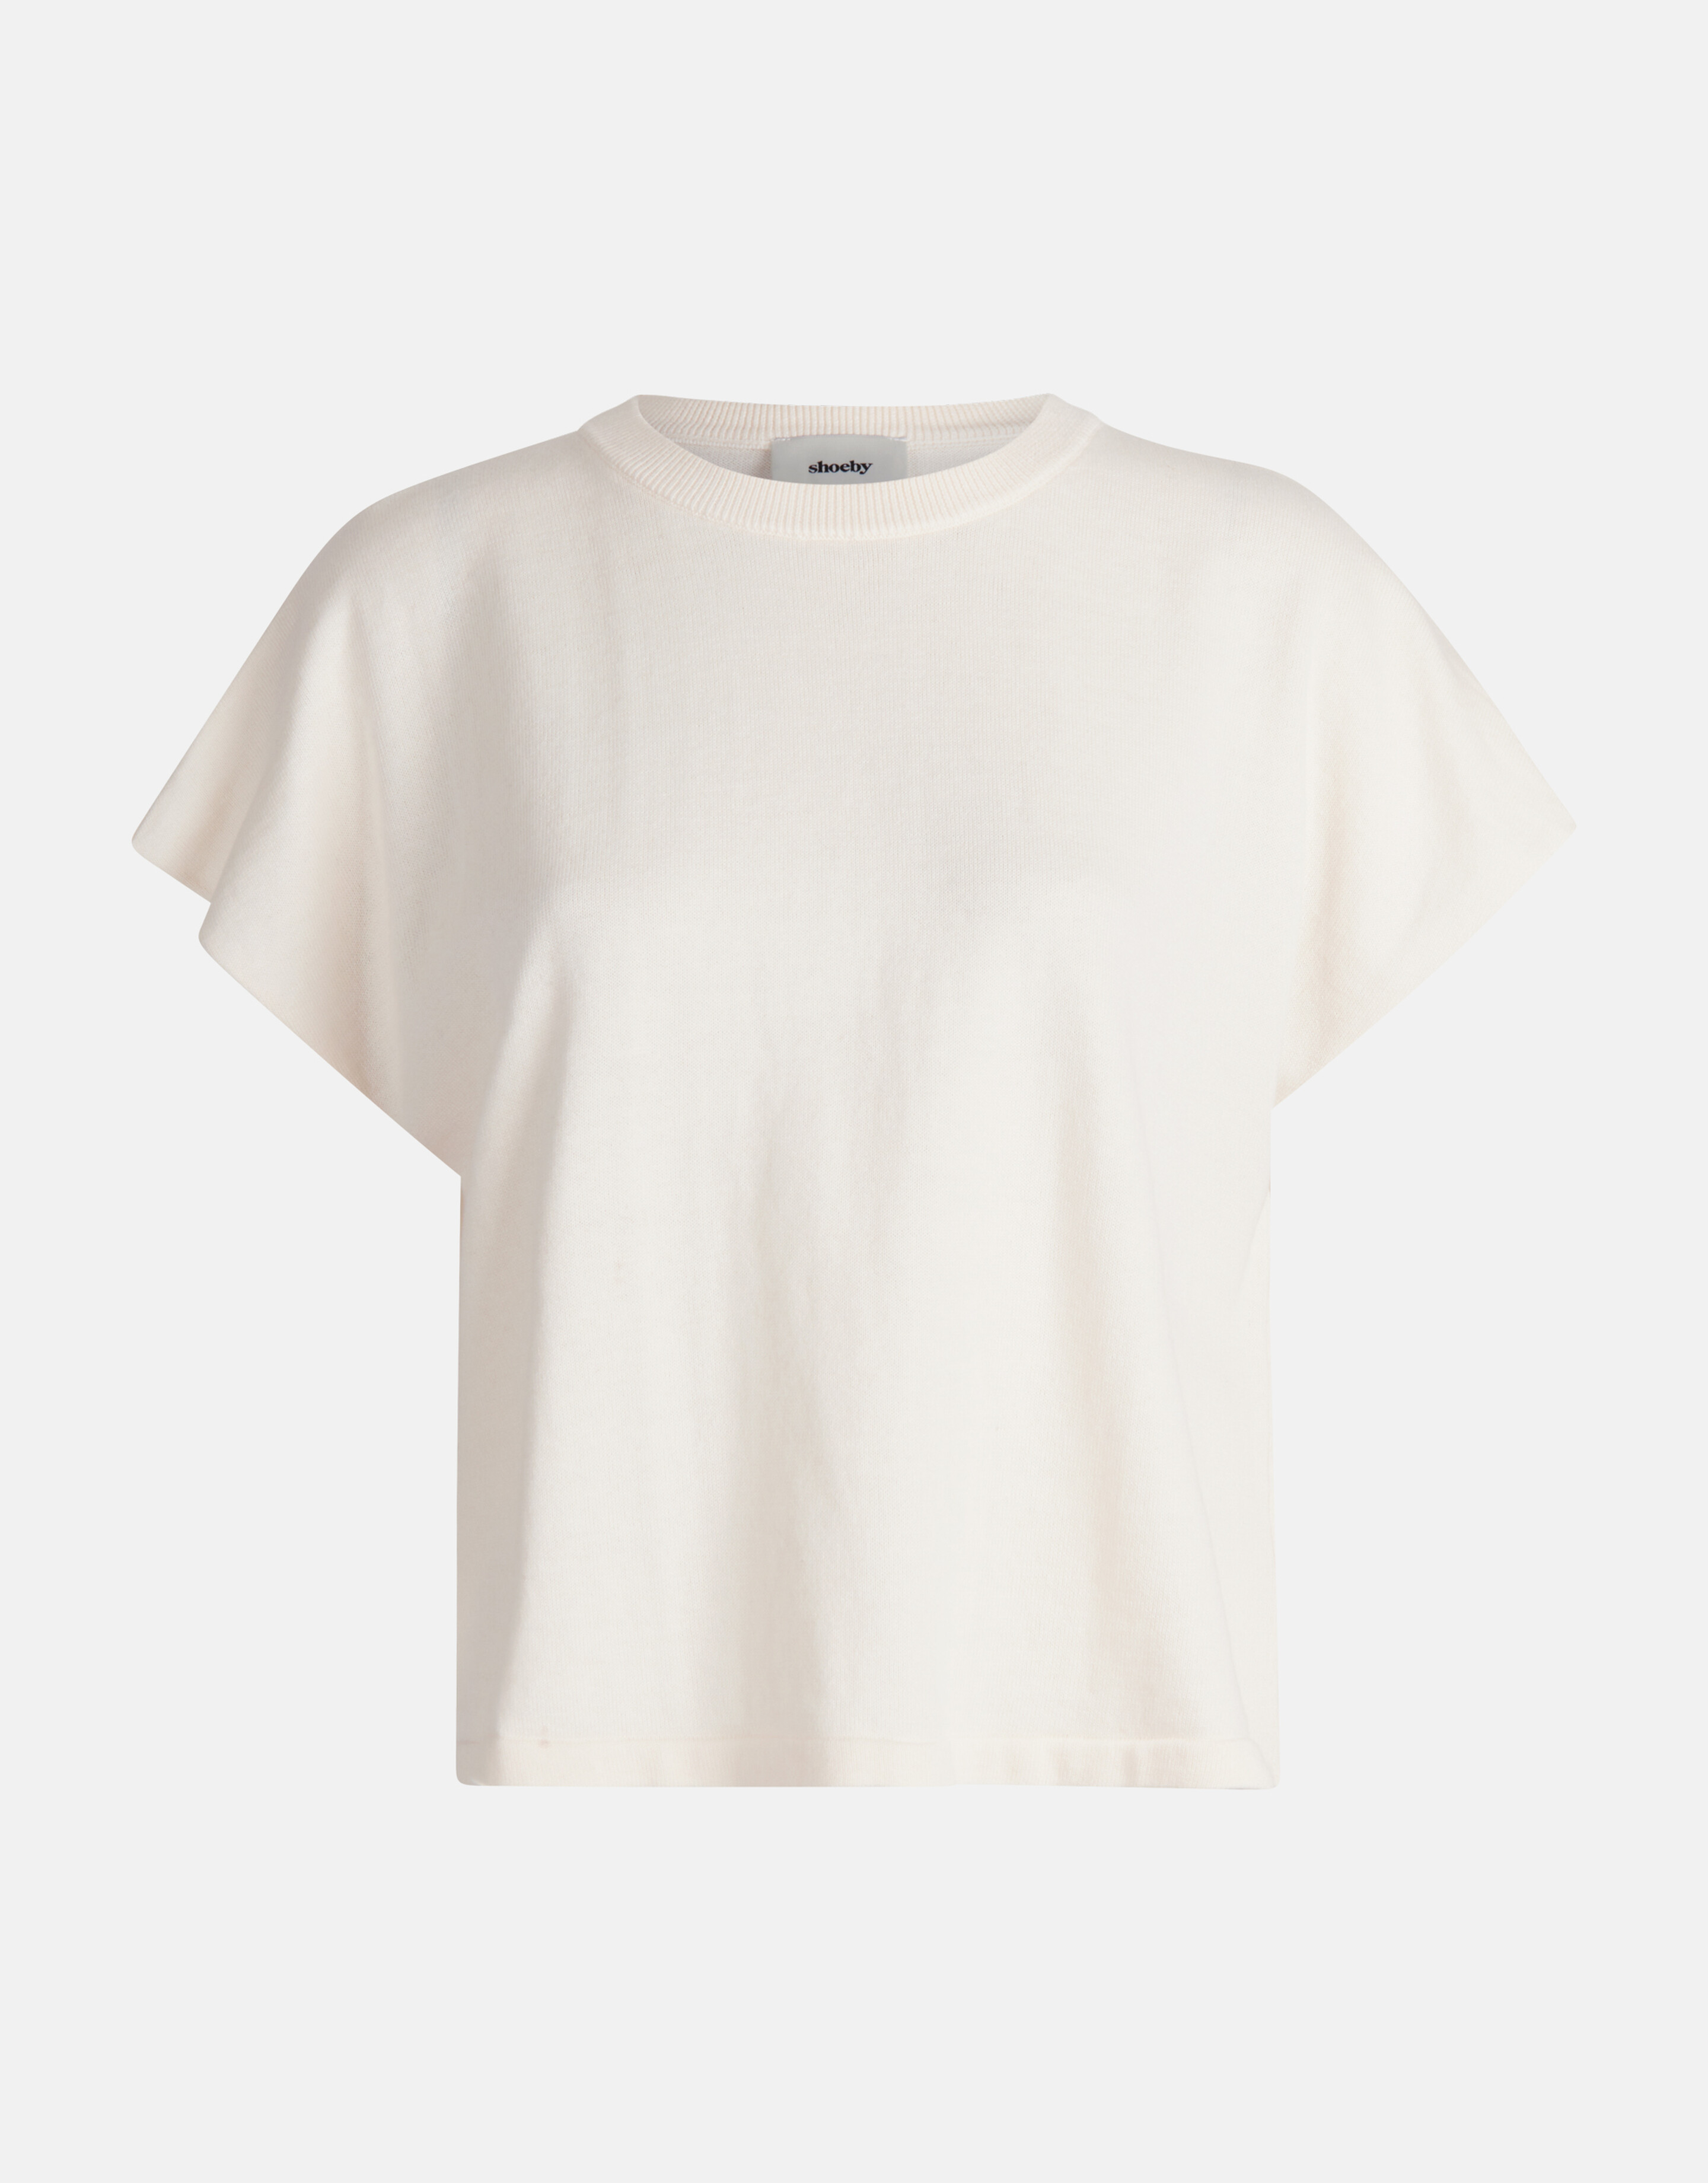 Gestricktes T-shirt Off White von Mieke SHOEBY WOMEN